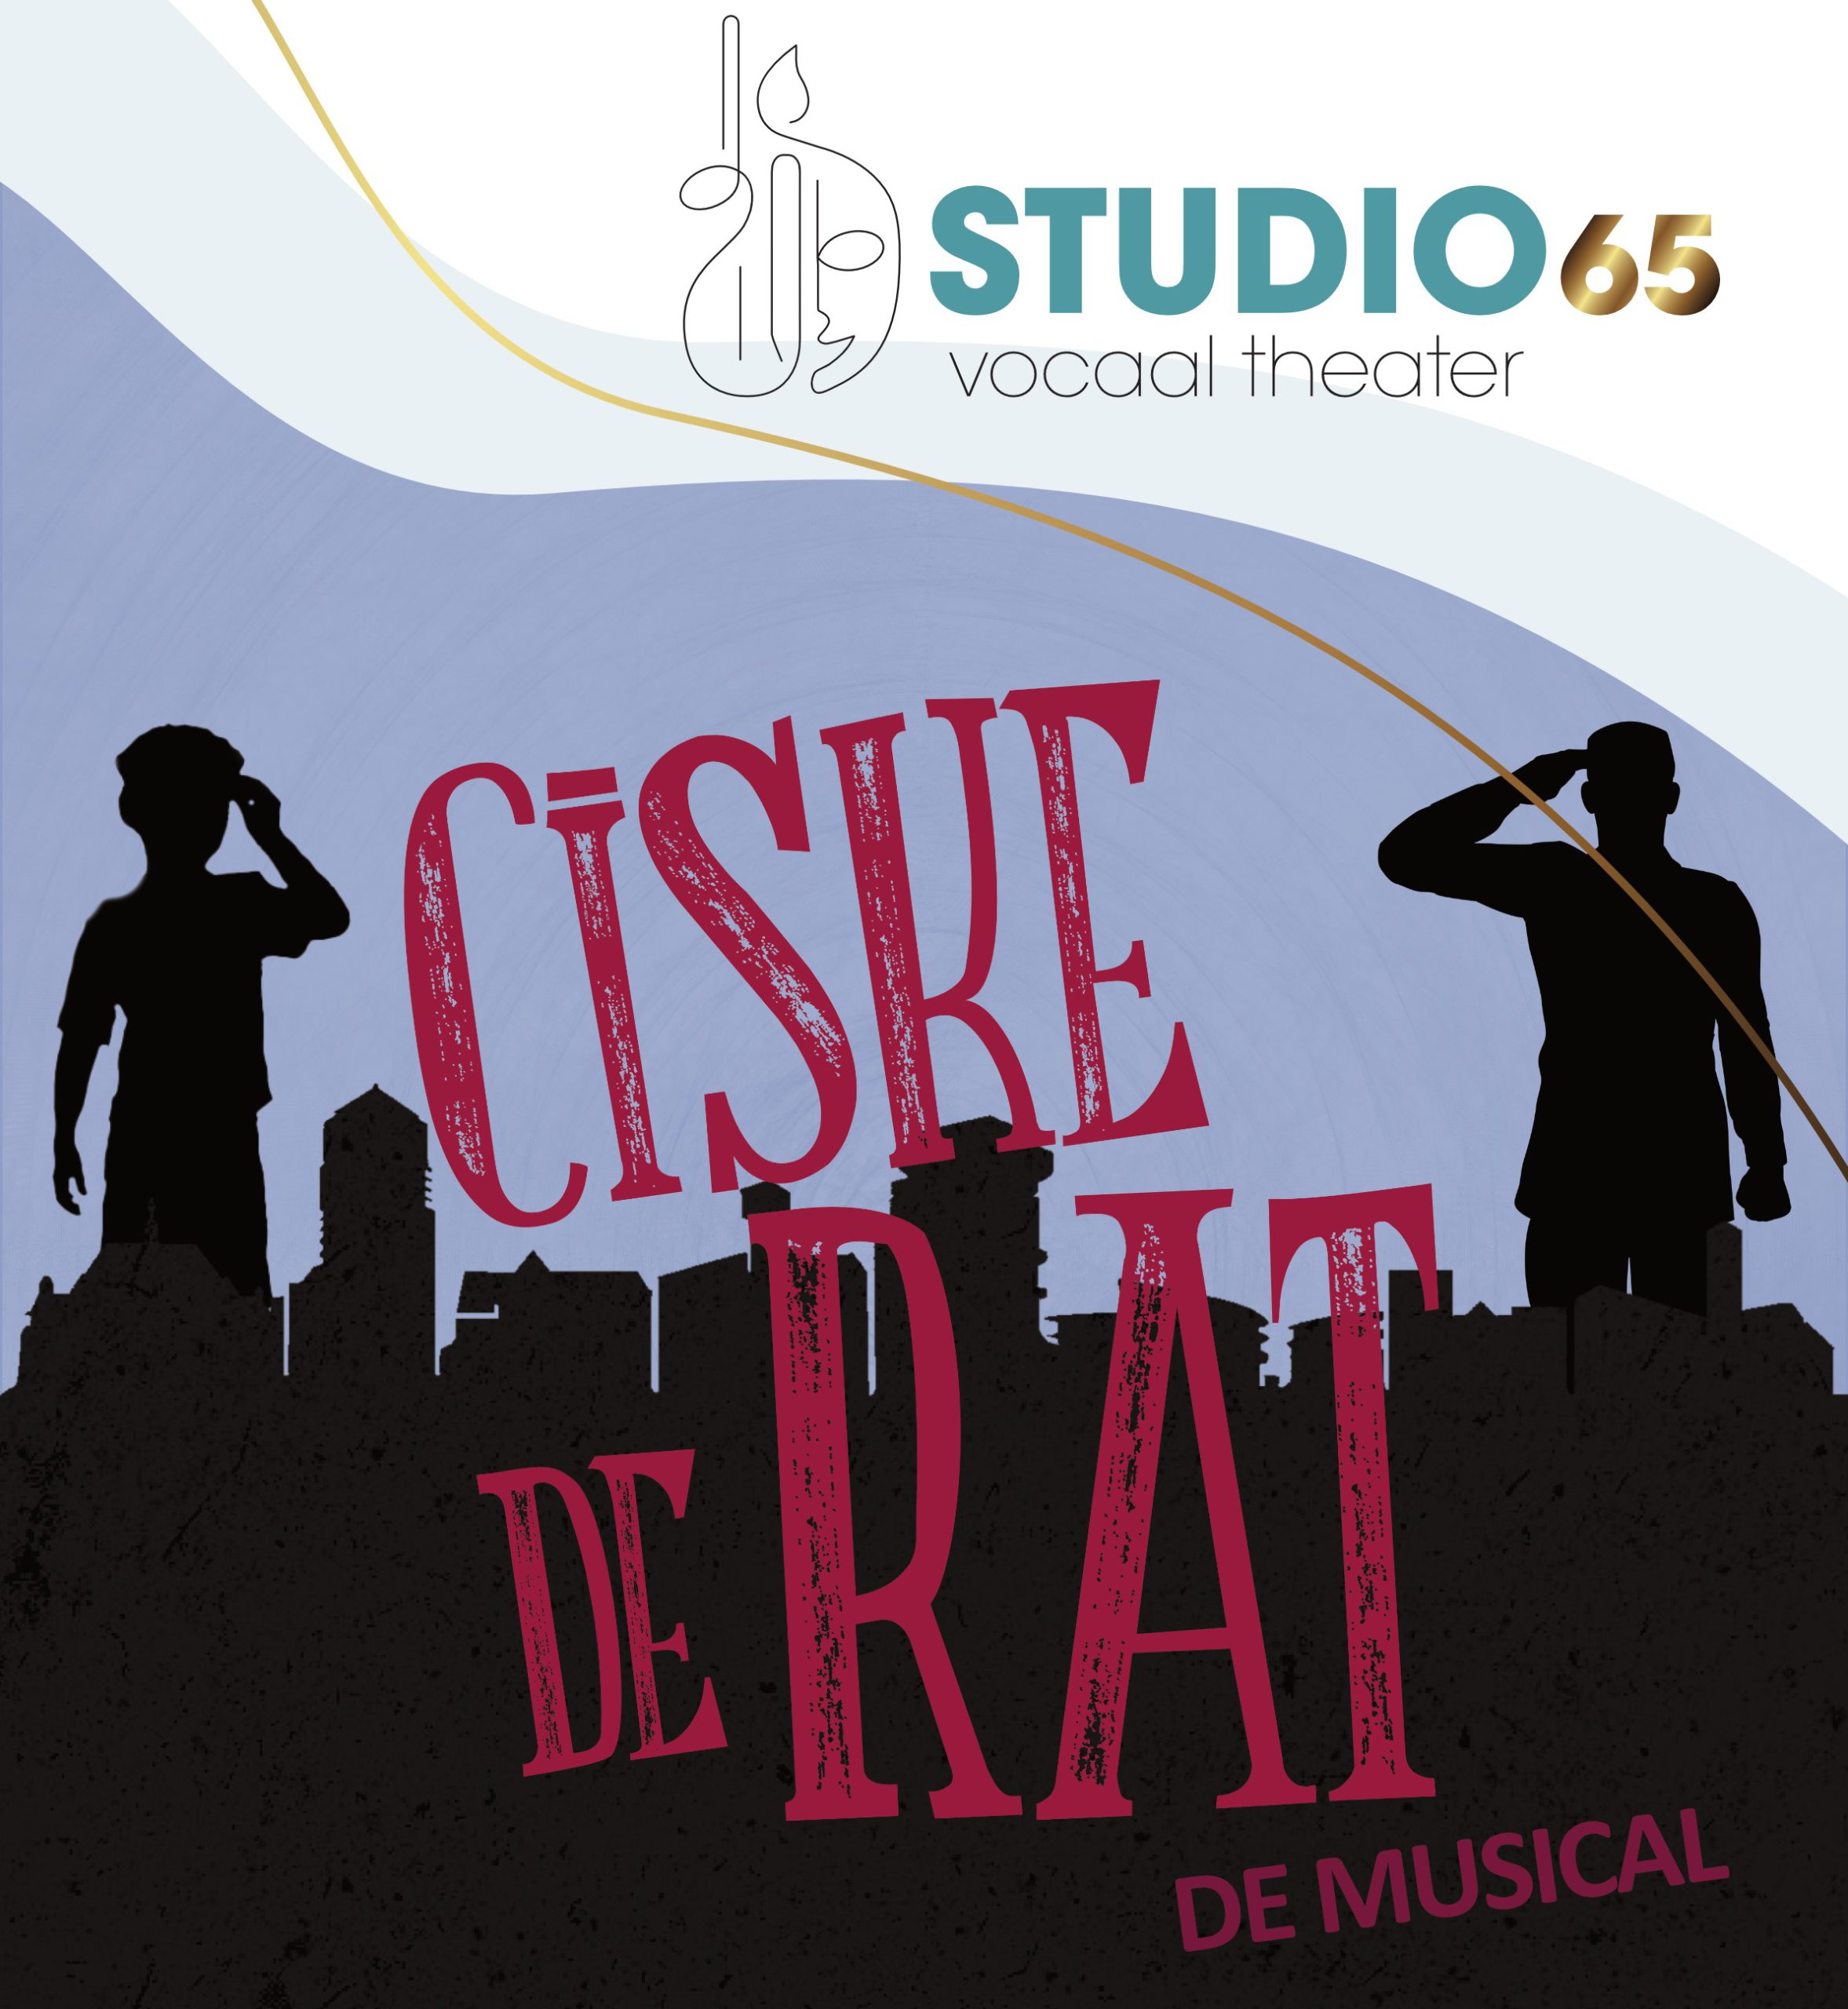 Ciske de Rat, de musical